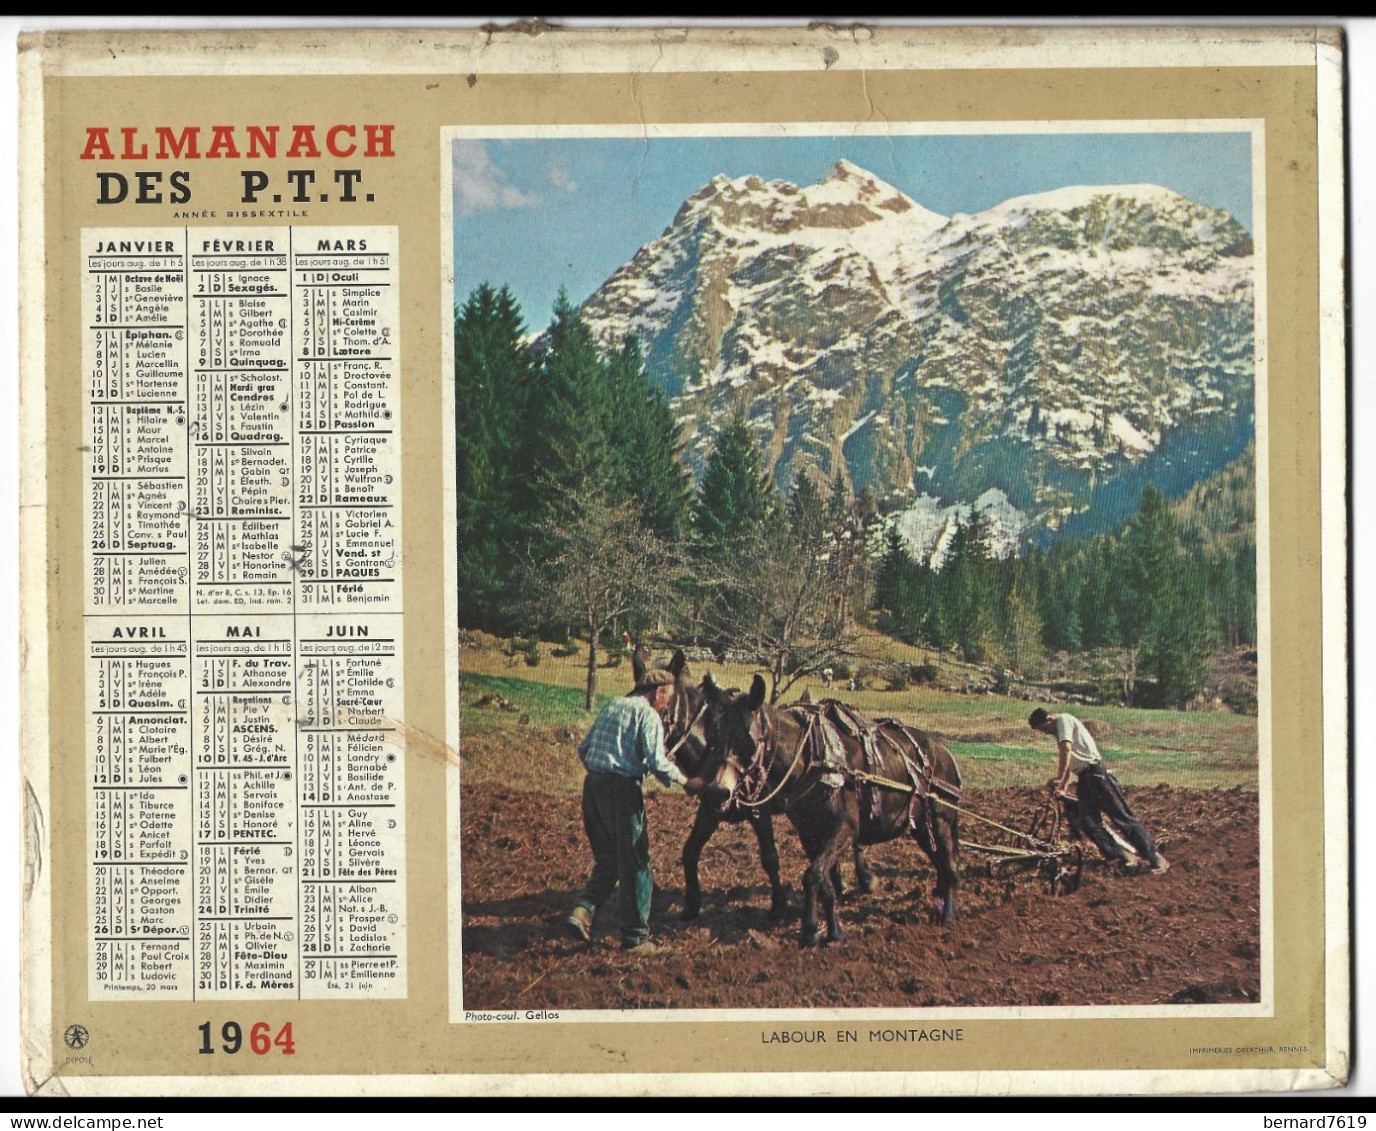 Almanach  Calendrier  P.T.T  -  La Poste -  1964 -  Labour En Montagne -printemps En Savoie - Tamaño Grande : 1961-70